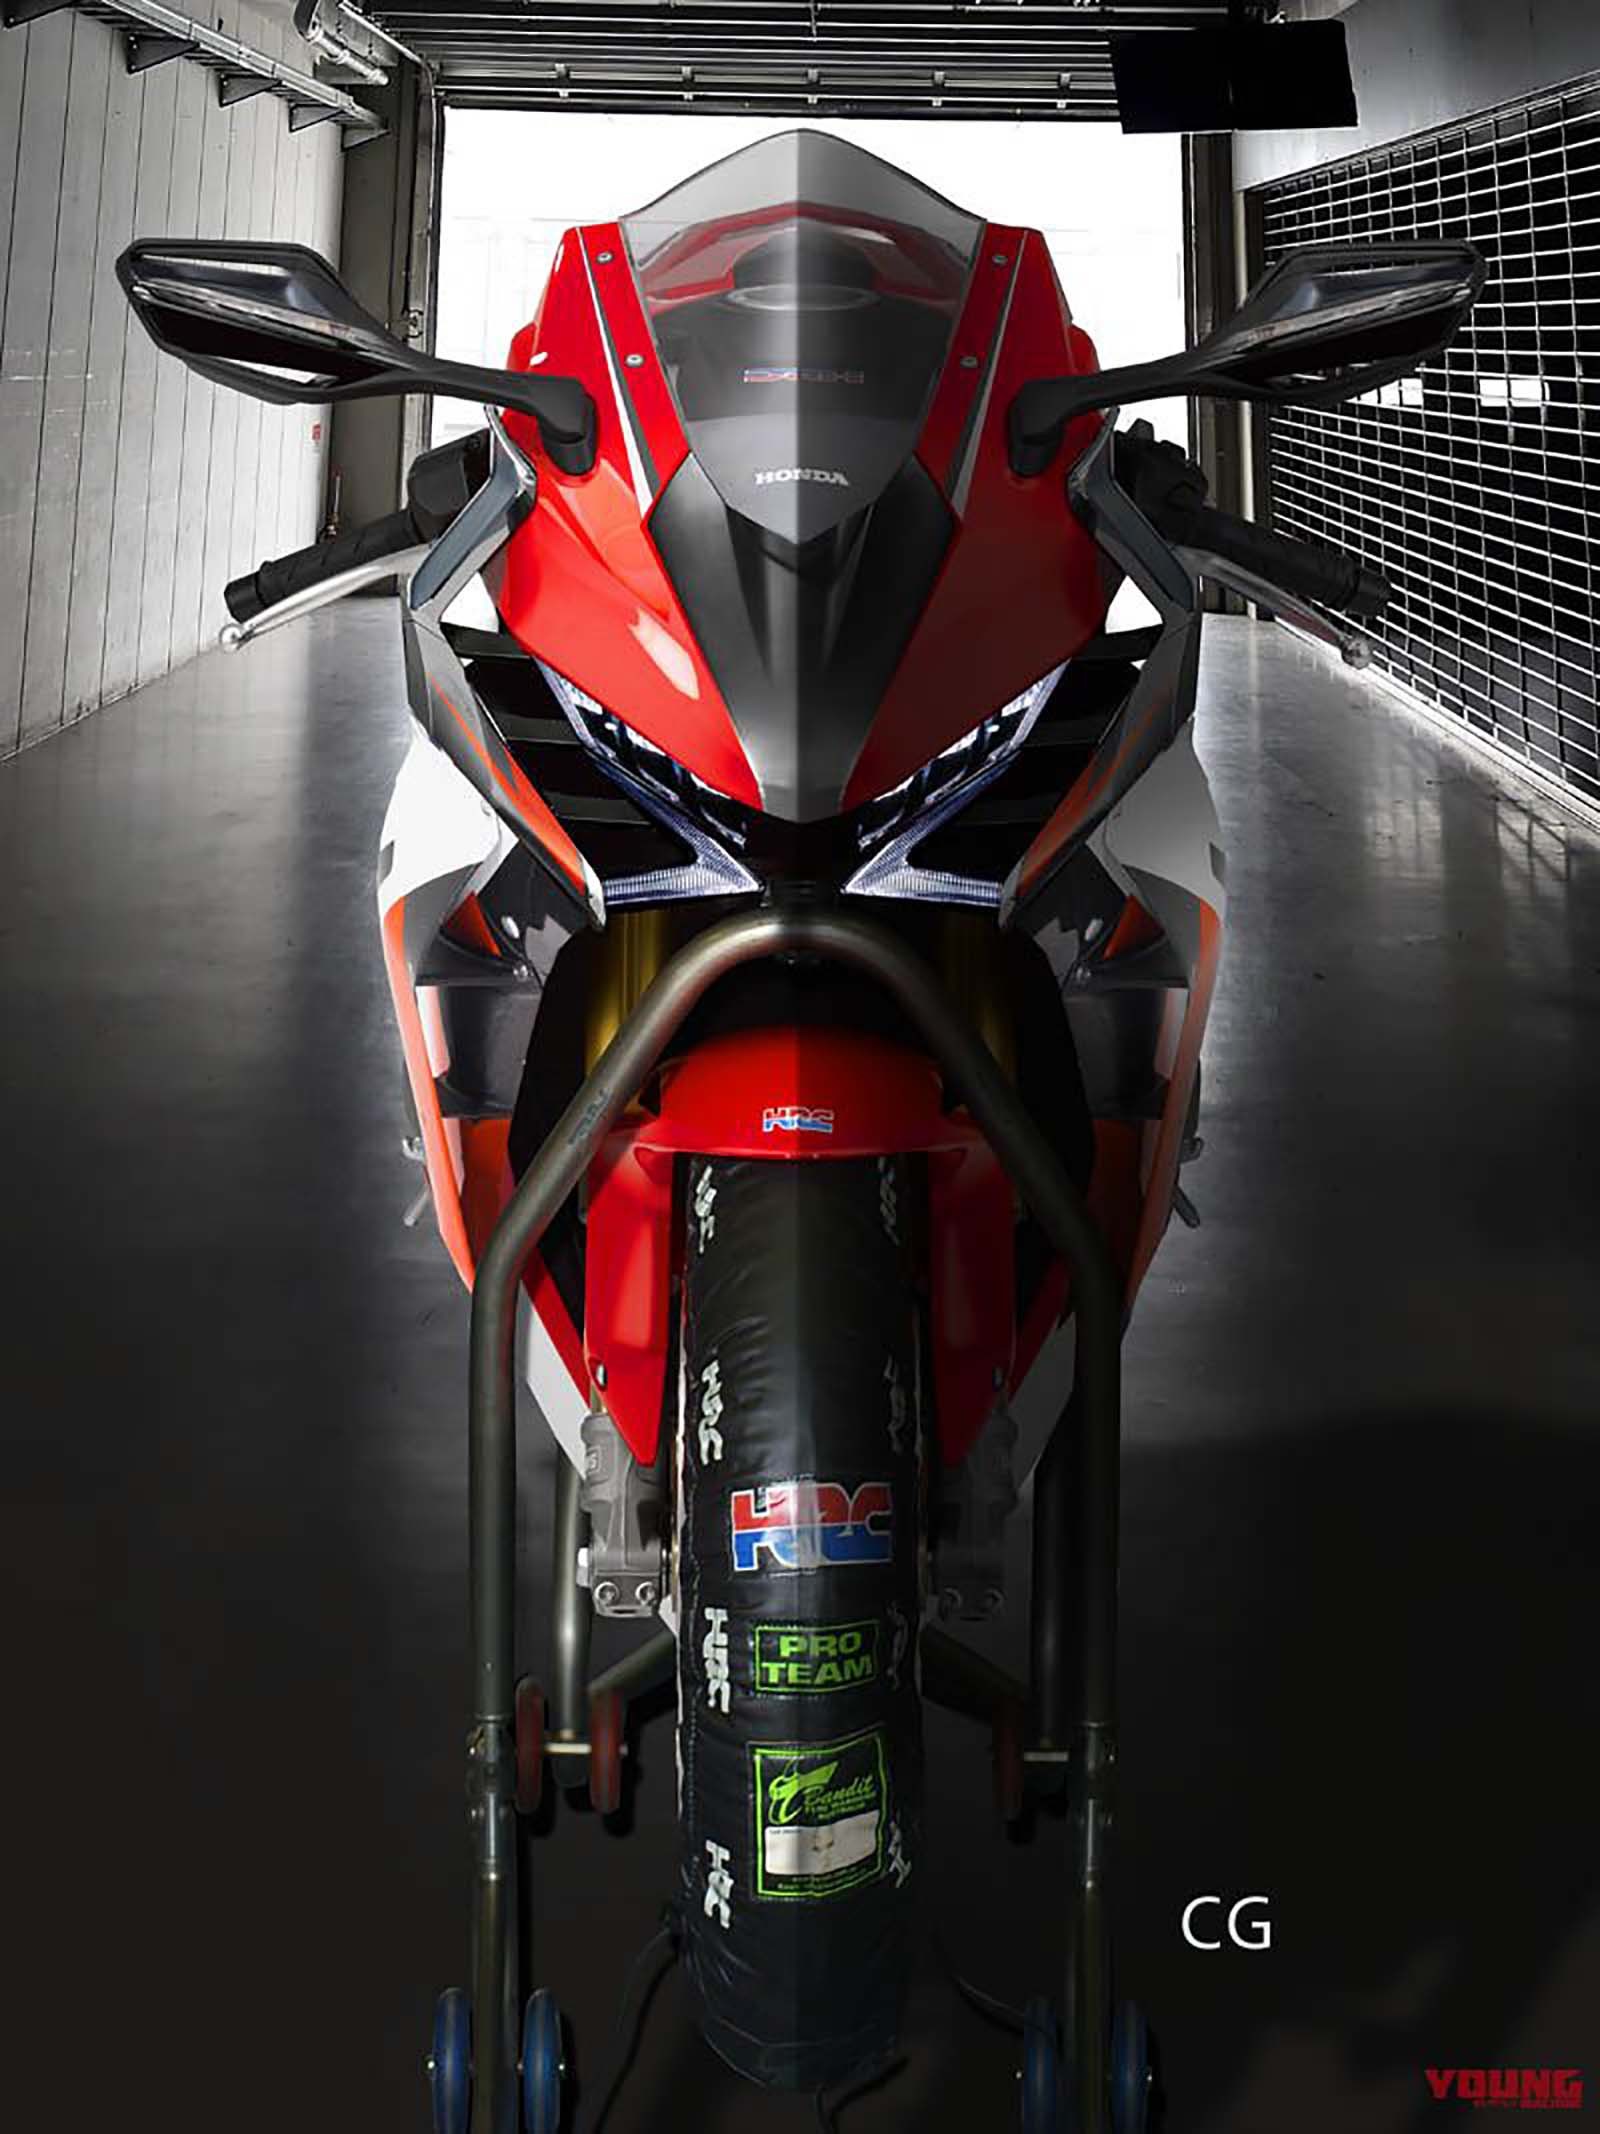 31+] 2020 Honda CBR 1000 RR Wallpapers - WallpaperSafari